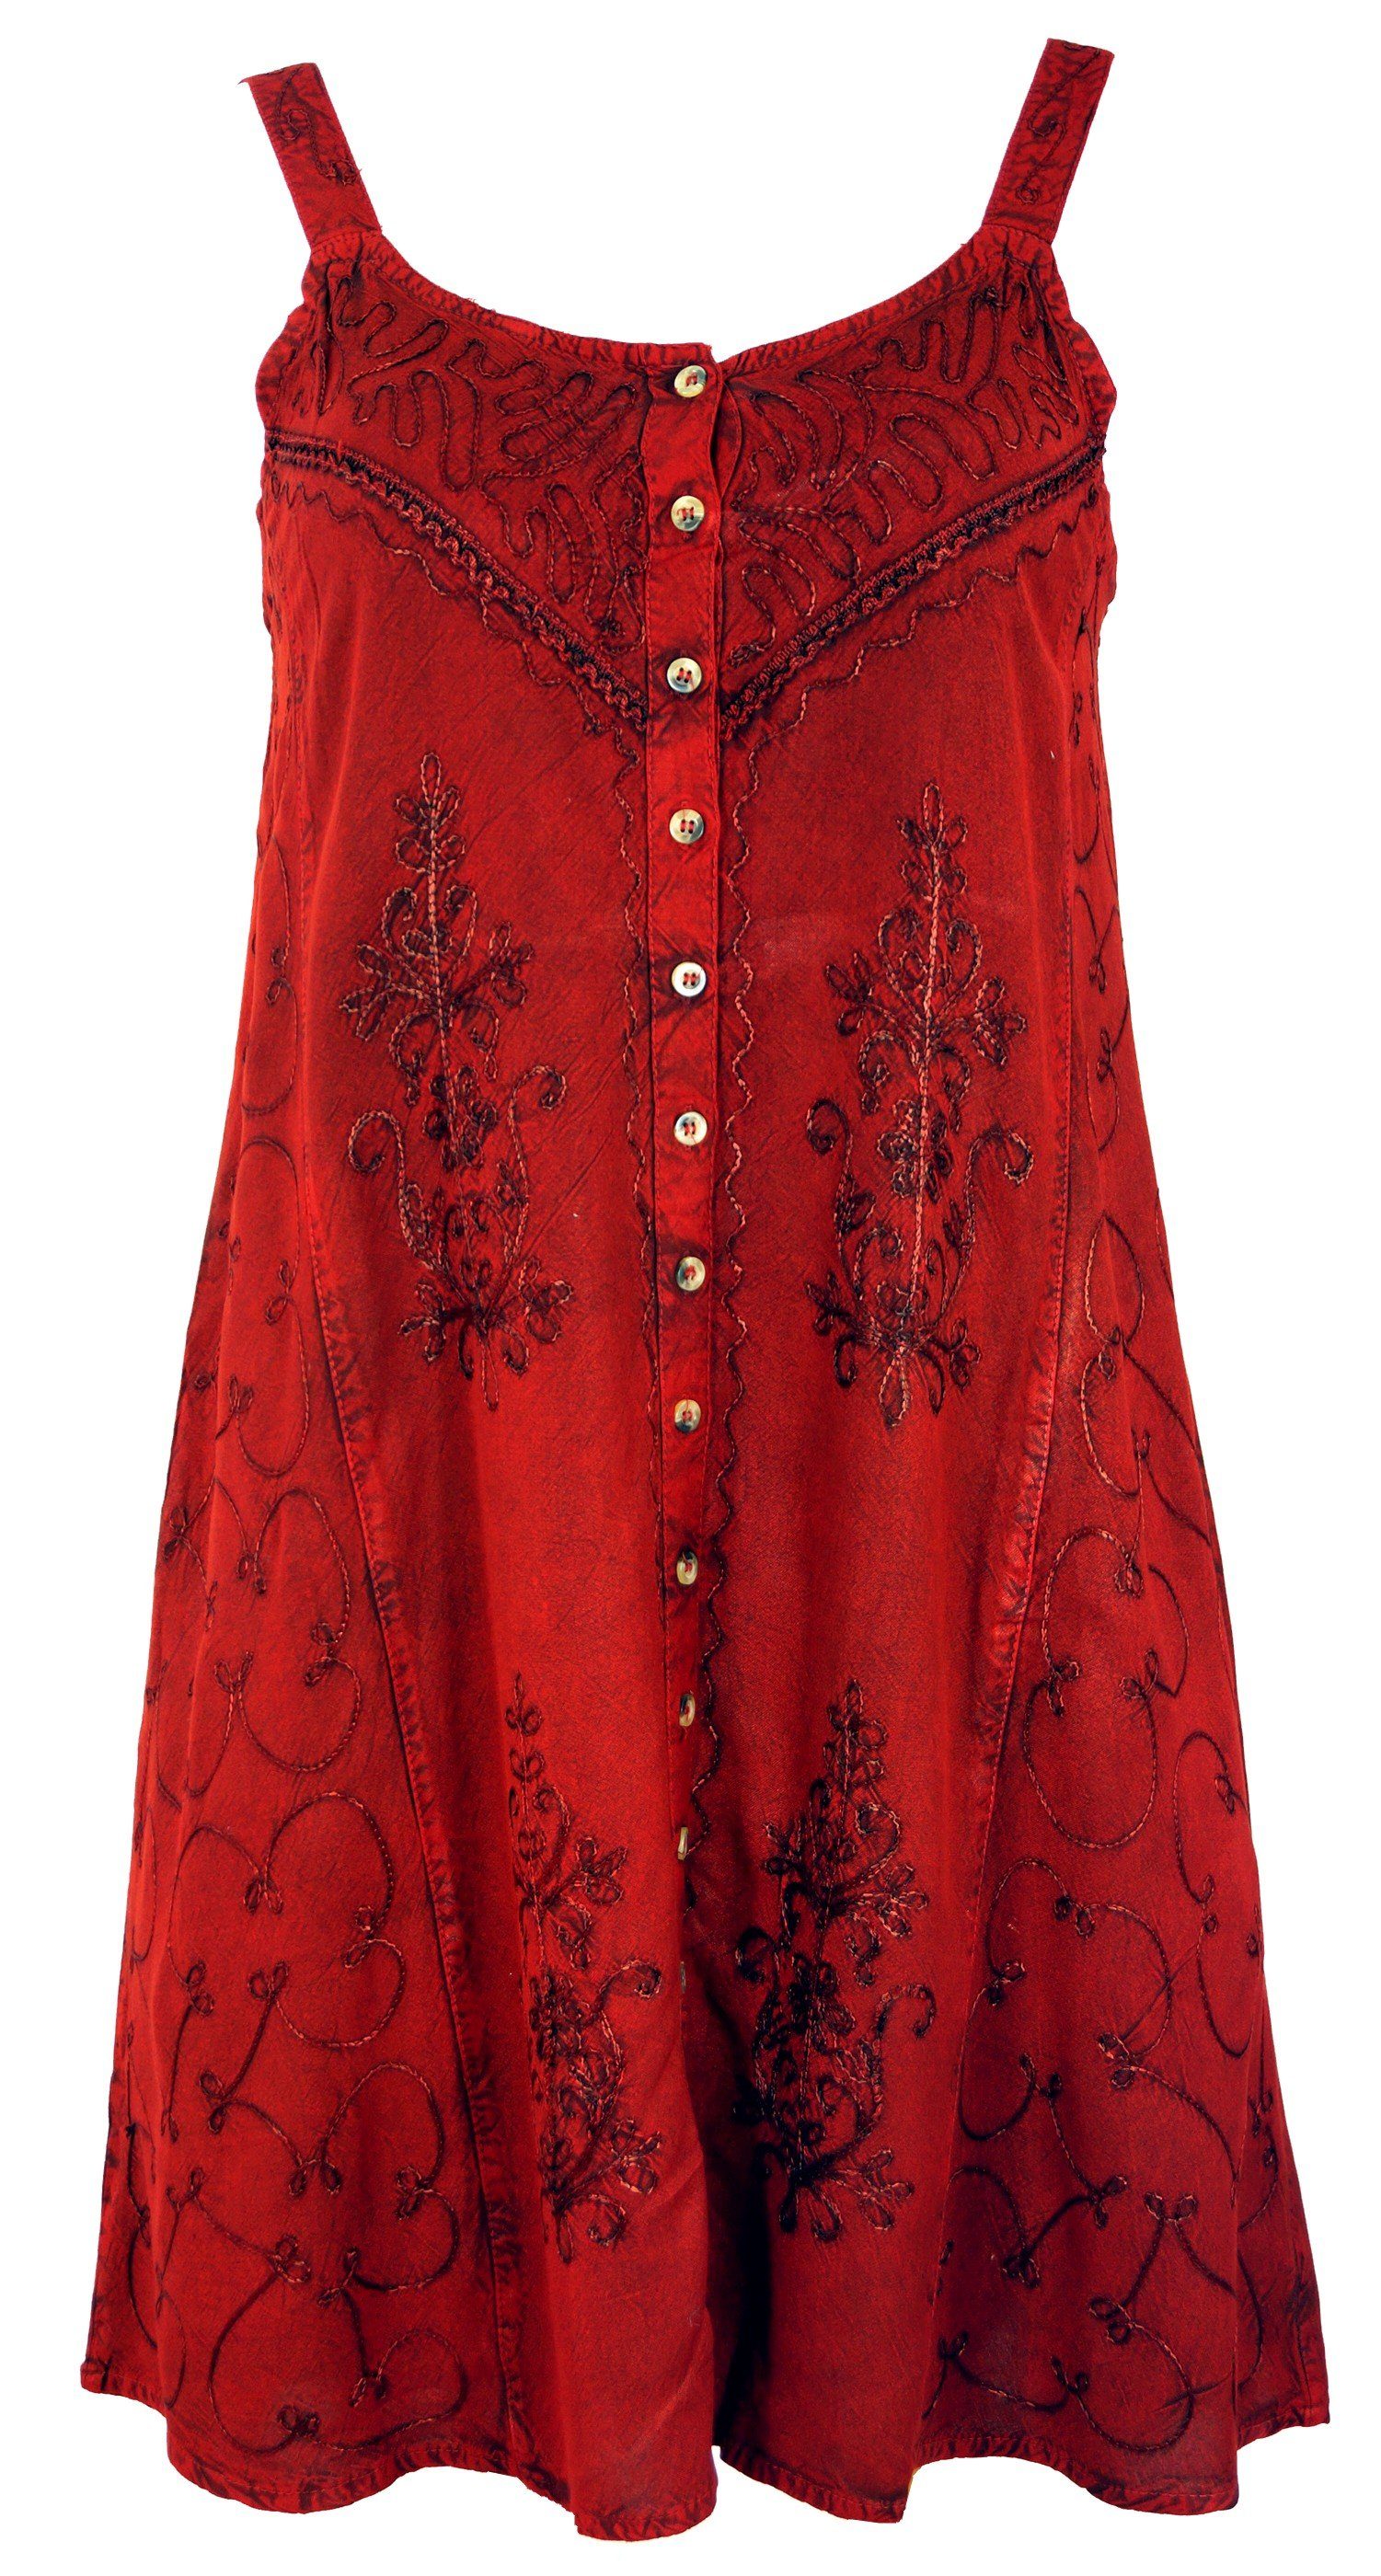 Guru-Shop Midikleid Besticktes indisches Kleid, Boho Minikleid -.. alternative Bekleidung rot Design 7